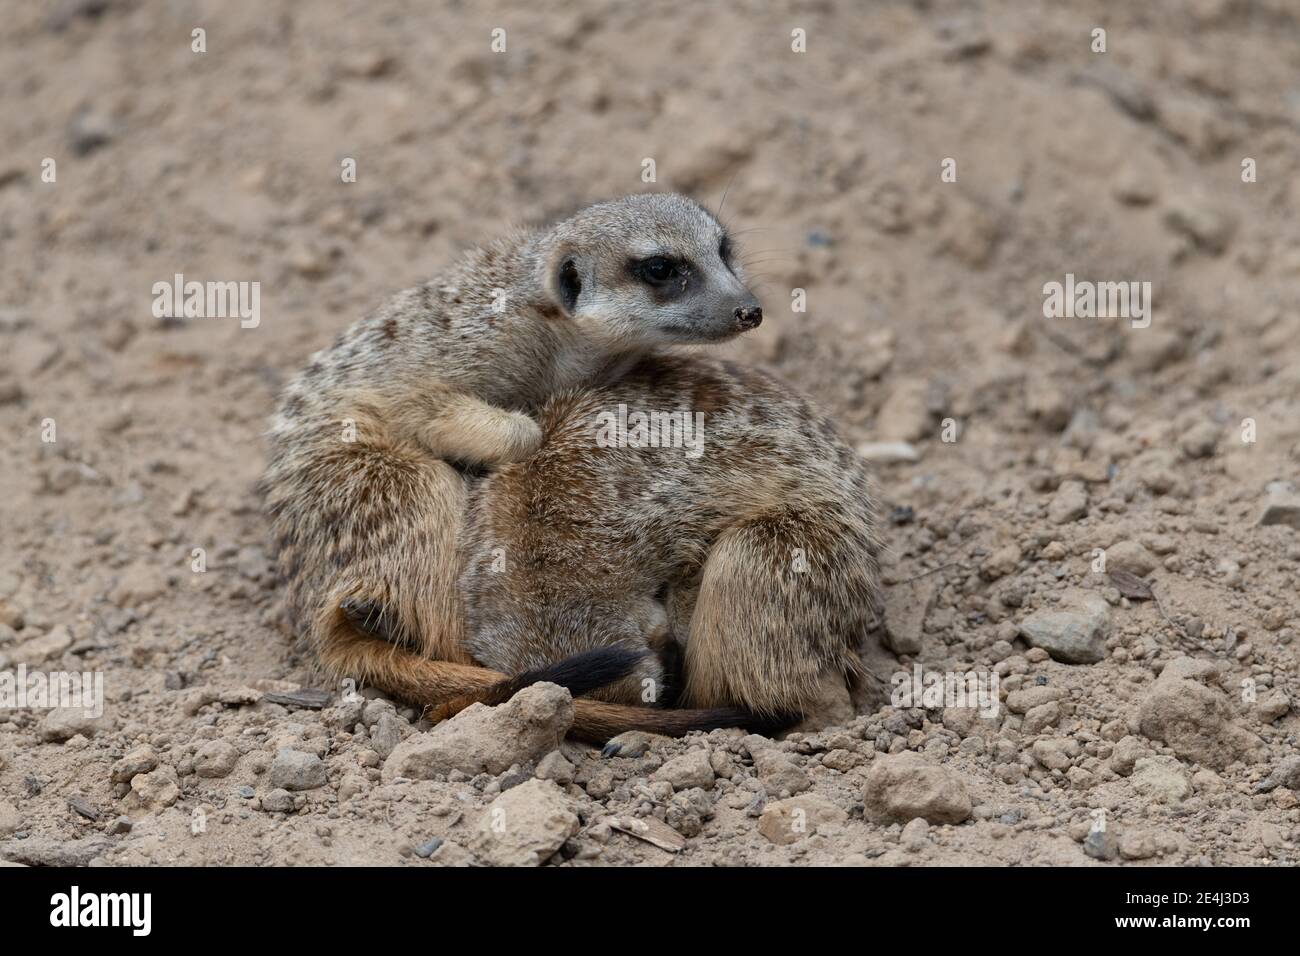 Dos Meerkat se abrigaban, un meerkat se curaba y el otro meerkat estaba alerta de amenazas Foto de stock